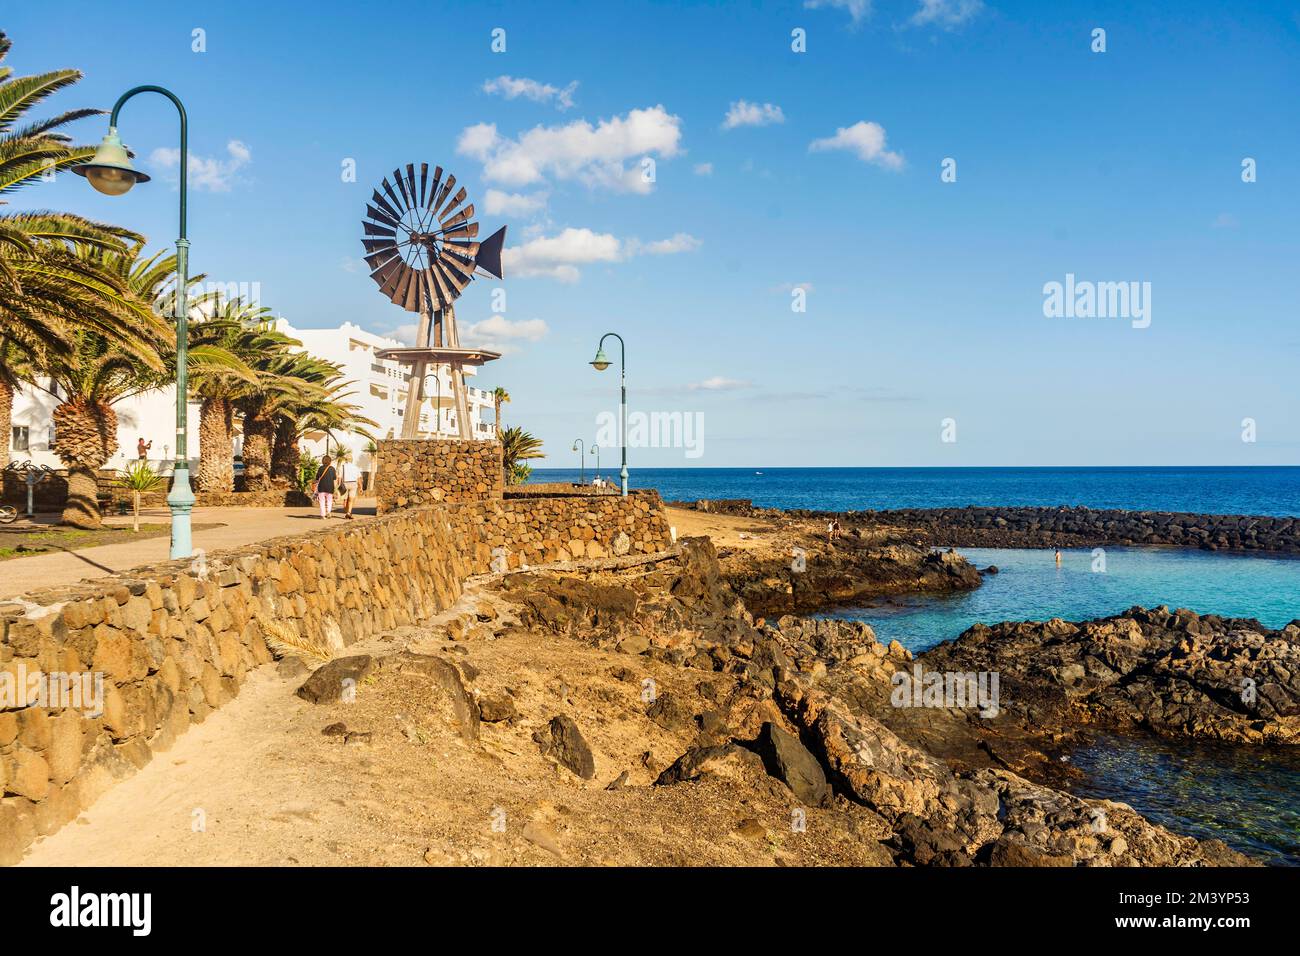 Vue sur la station balnéaire de Costa Teguise, Lanzarote, Canary Island, Espagne Banque D'Images